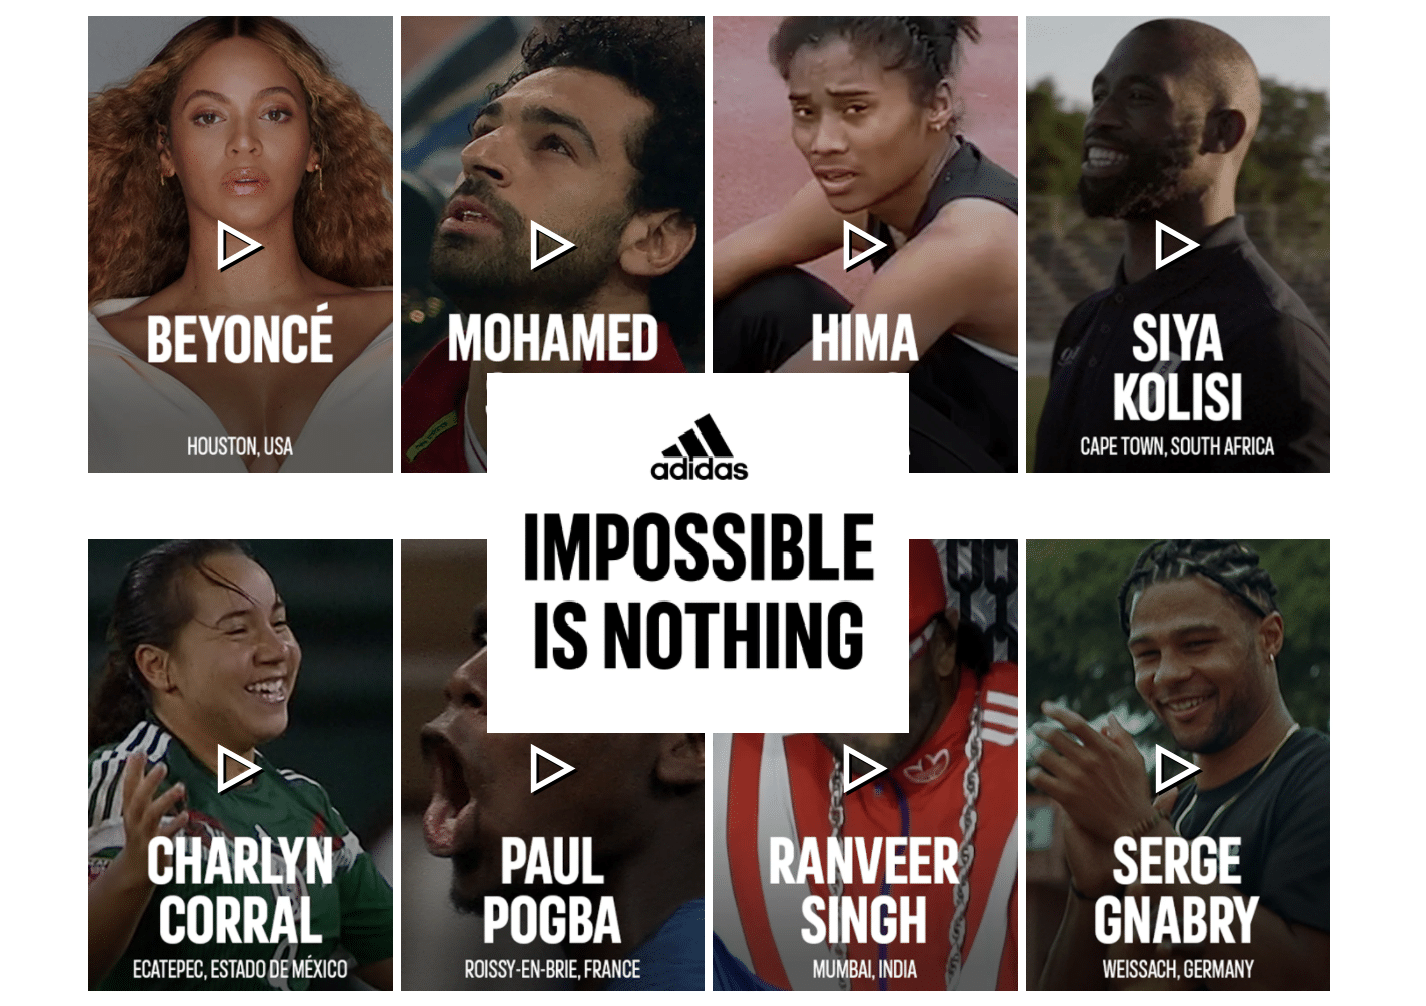 Adidas aggiorna il claim “Impossible Is Nothing” invitando a vedere nuove possibilità